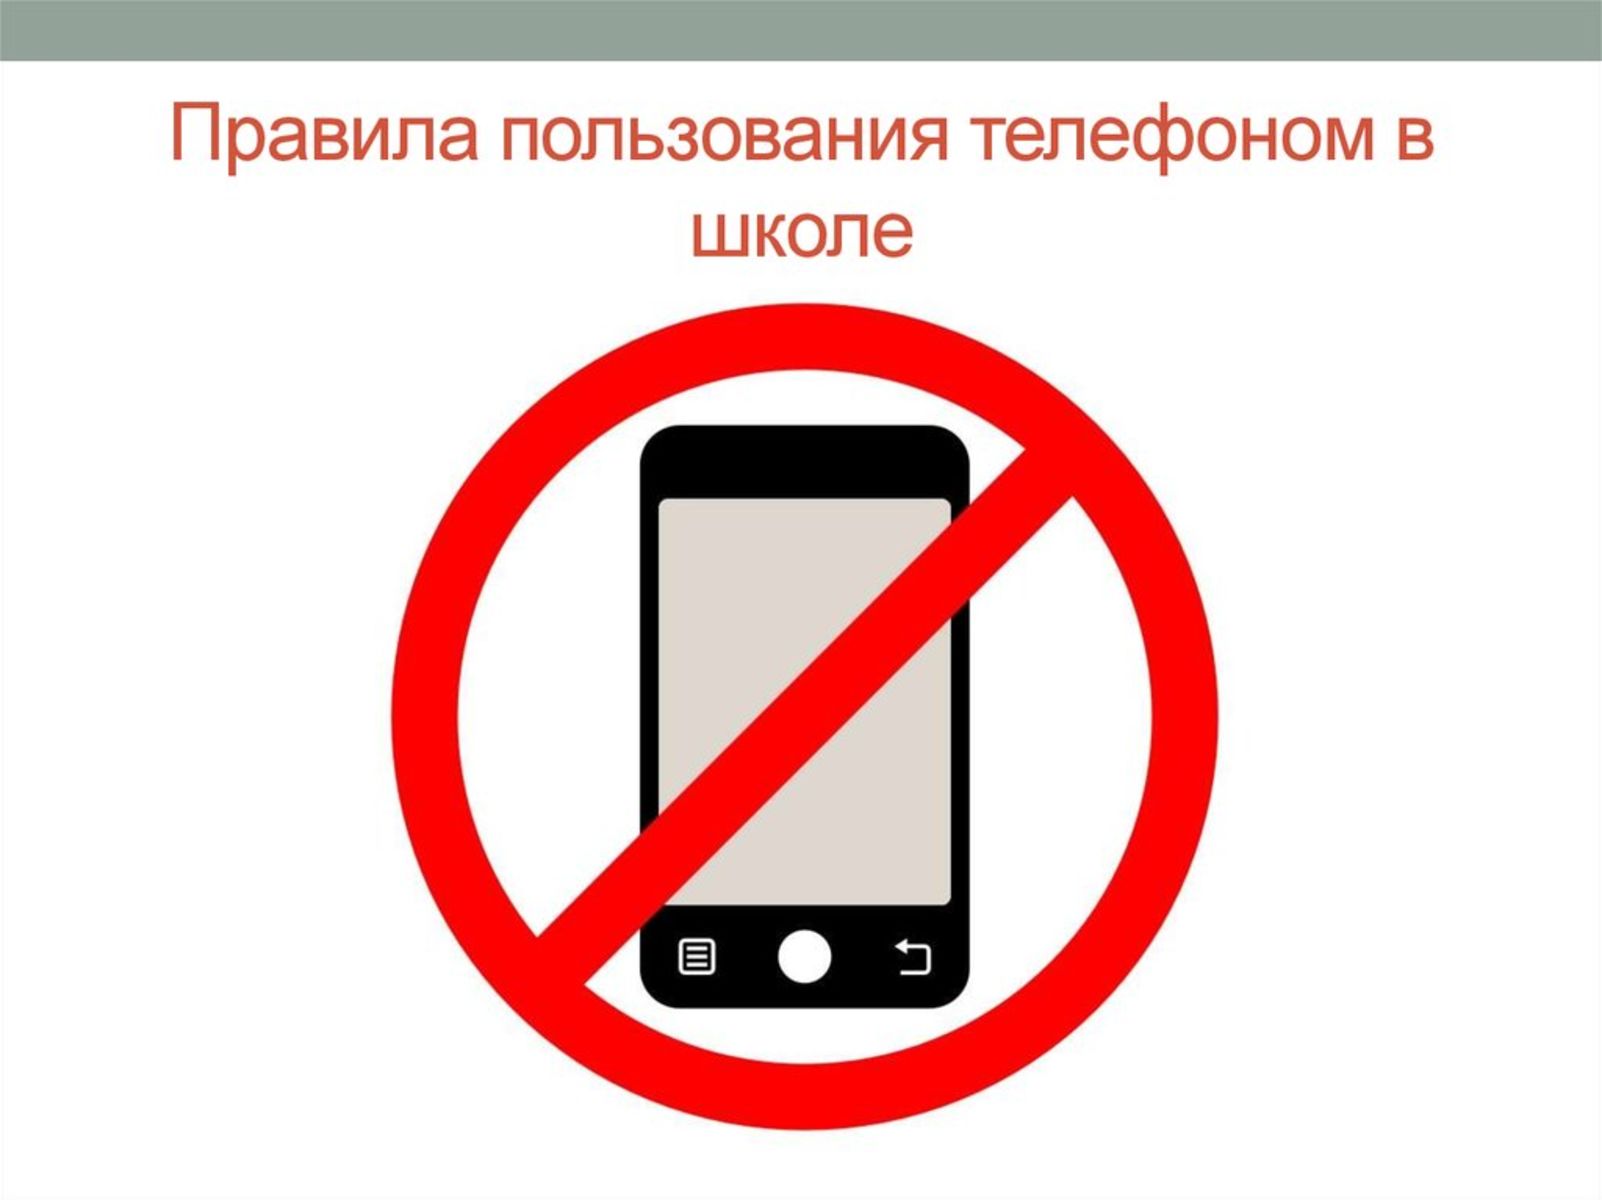 Выключить телефон с другого телефона. Запрет на пользование телефоном. Запреи использования мобиль. Правила пользования телефоном в школе. Использование телефона в школе запрещено.